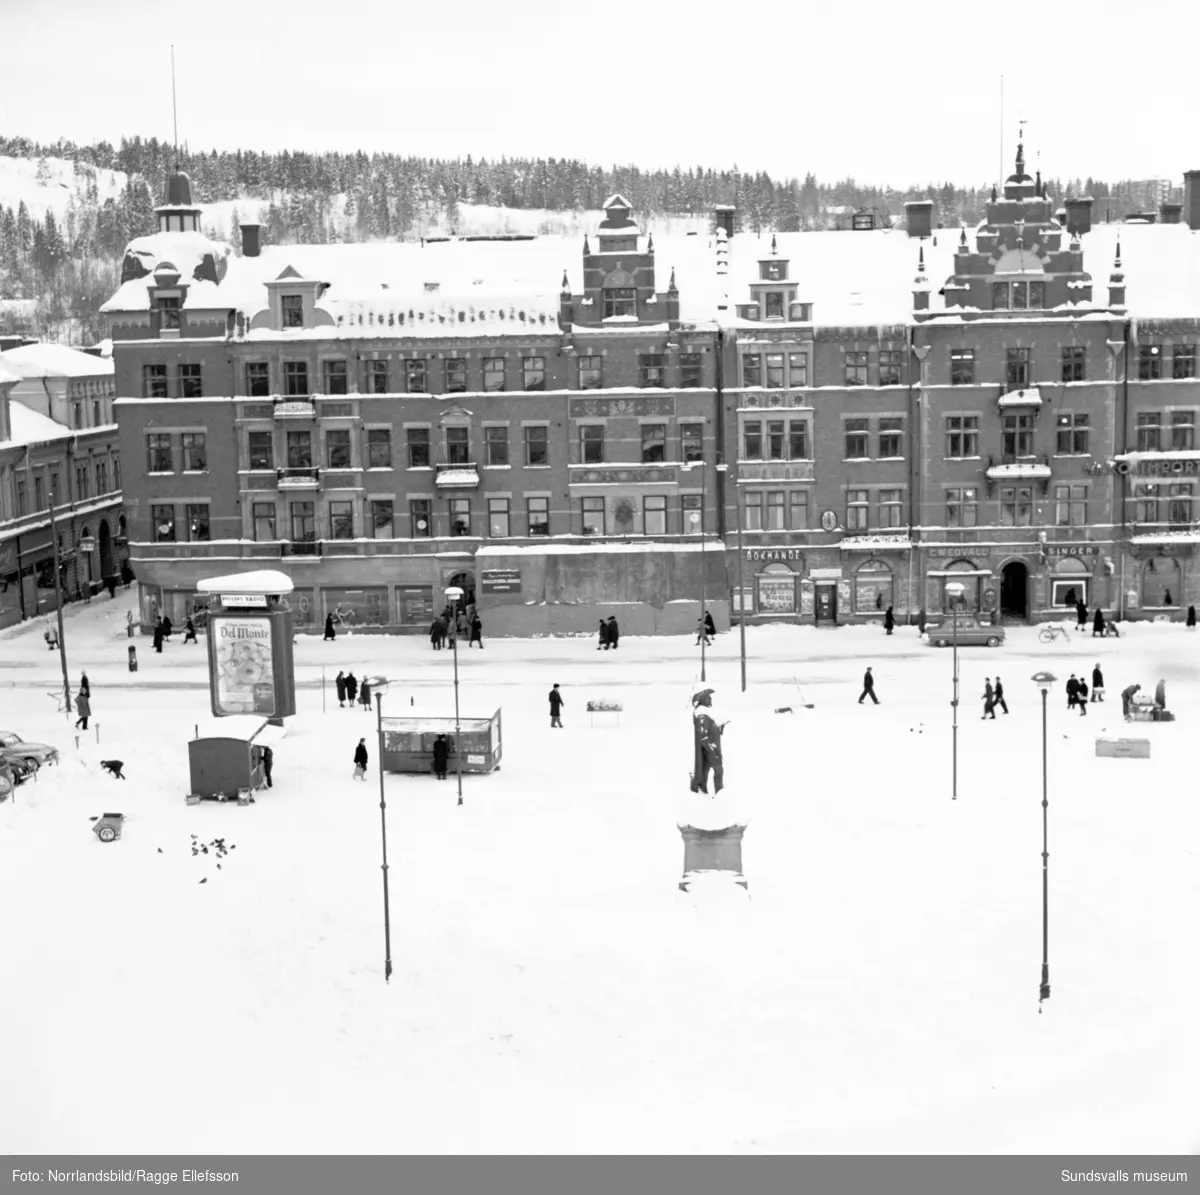 Vinterbild på Forumhuset sett från Stadshusets tak.